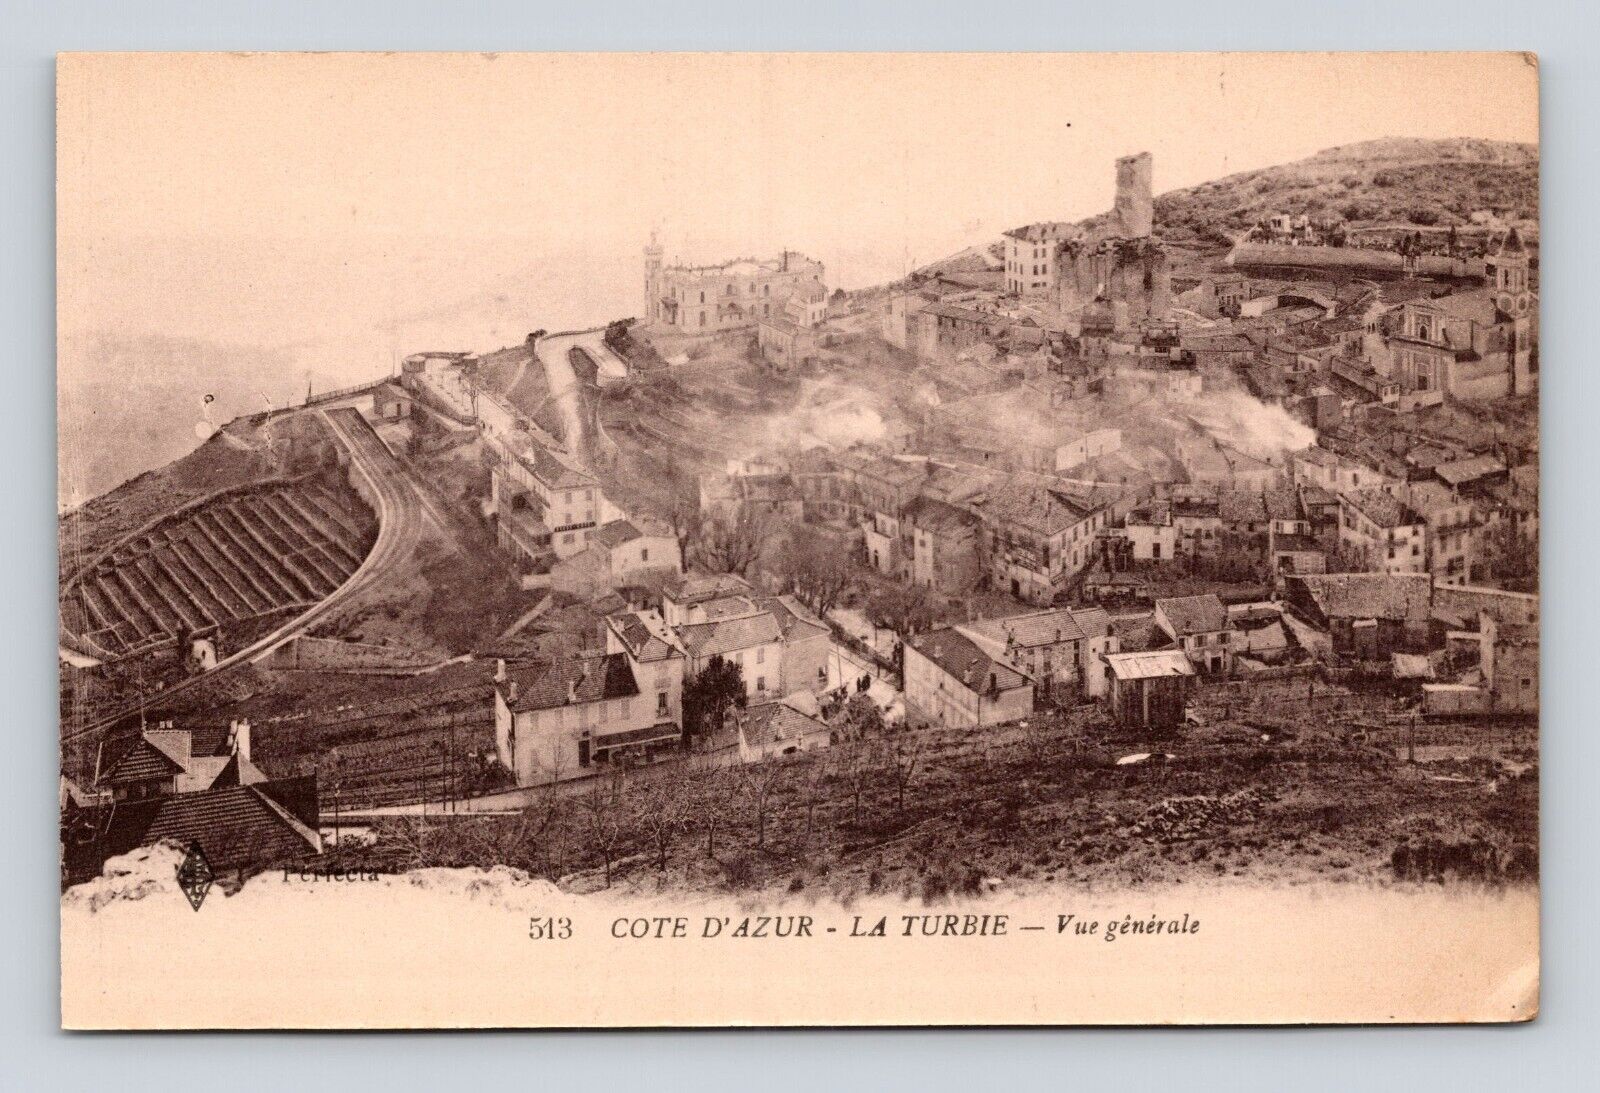 Antique Postcard COTE DE AZUR TURBIE GENERAL VIEW 1908-1918